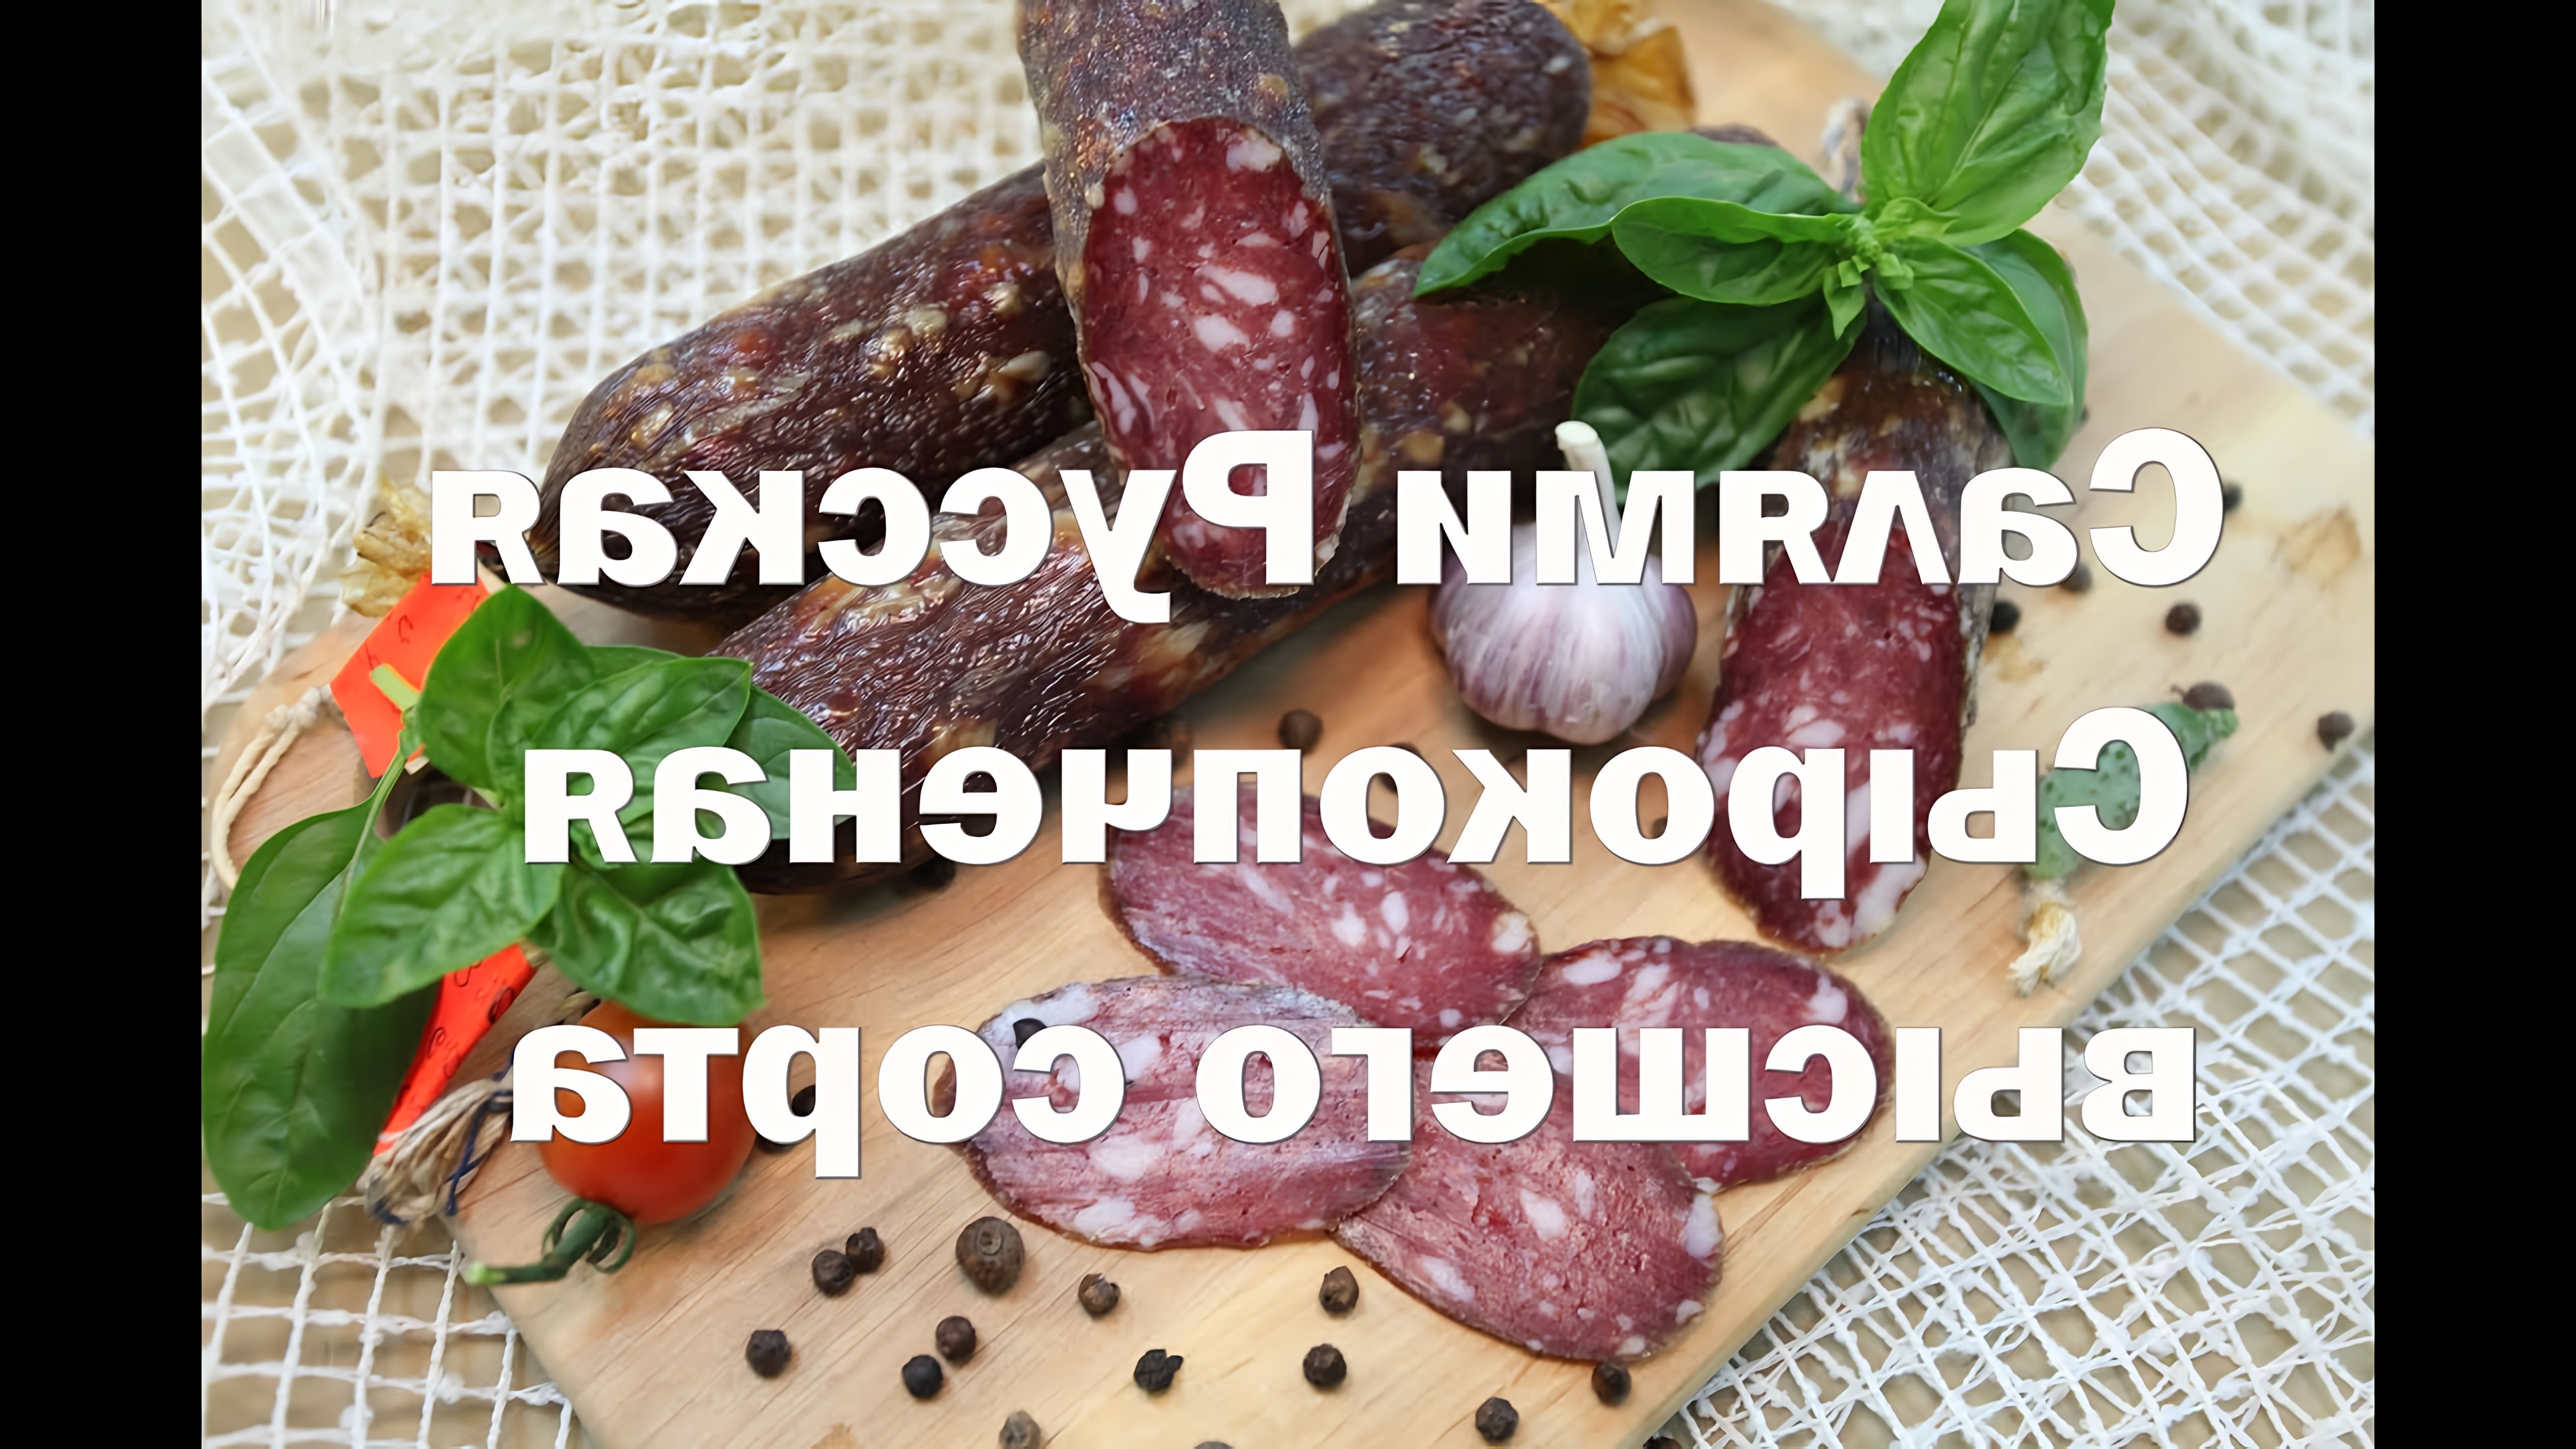 В данном видео демонстрируется процесс приготовления колбасы "Салями Русская высшего сорта" в домашних условиях